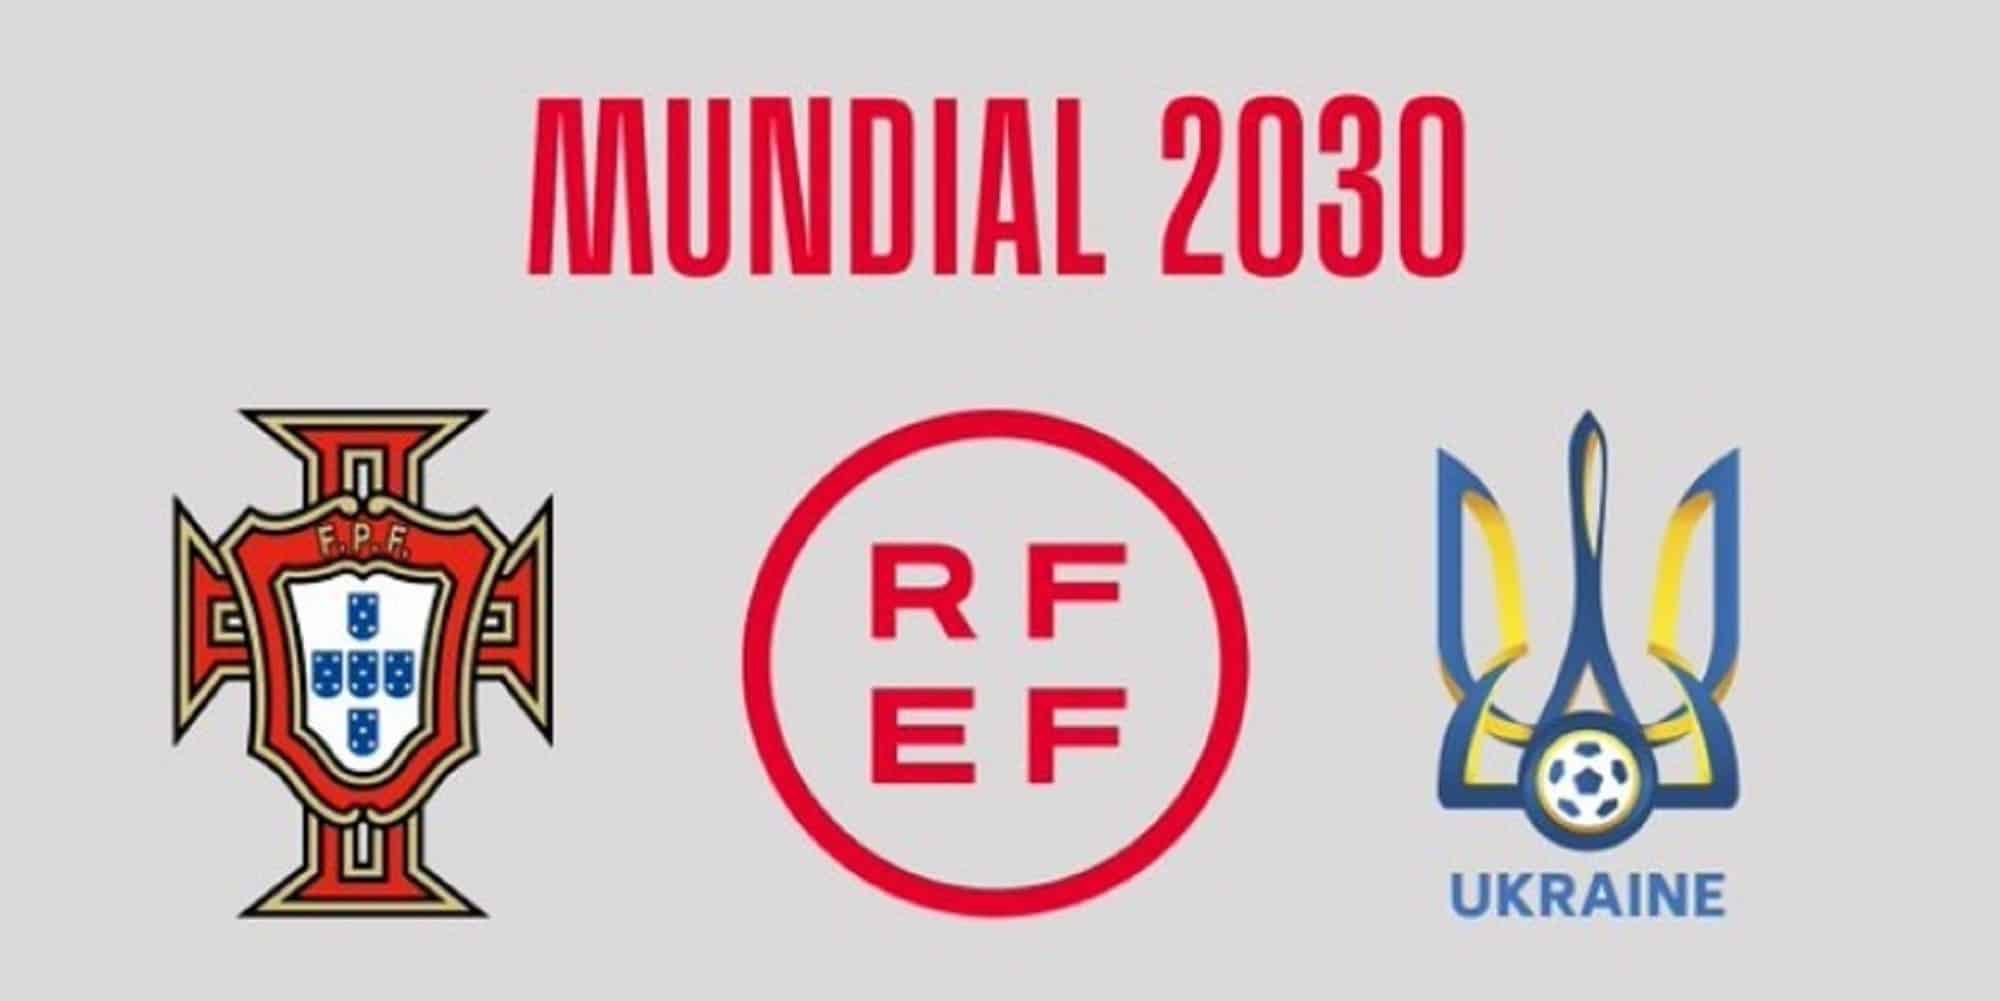 Κοινή υποψηφιότητα Ισπανίας-Πορτογαλίας-Ουκρανίας για το Μουντιάλ 2030